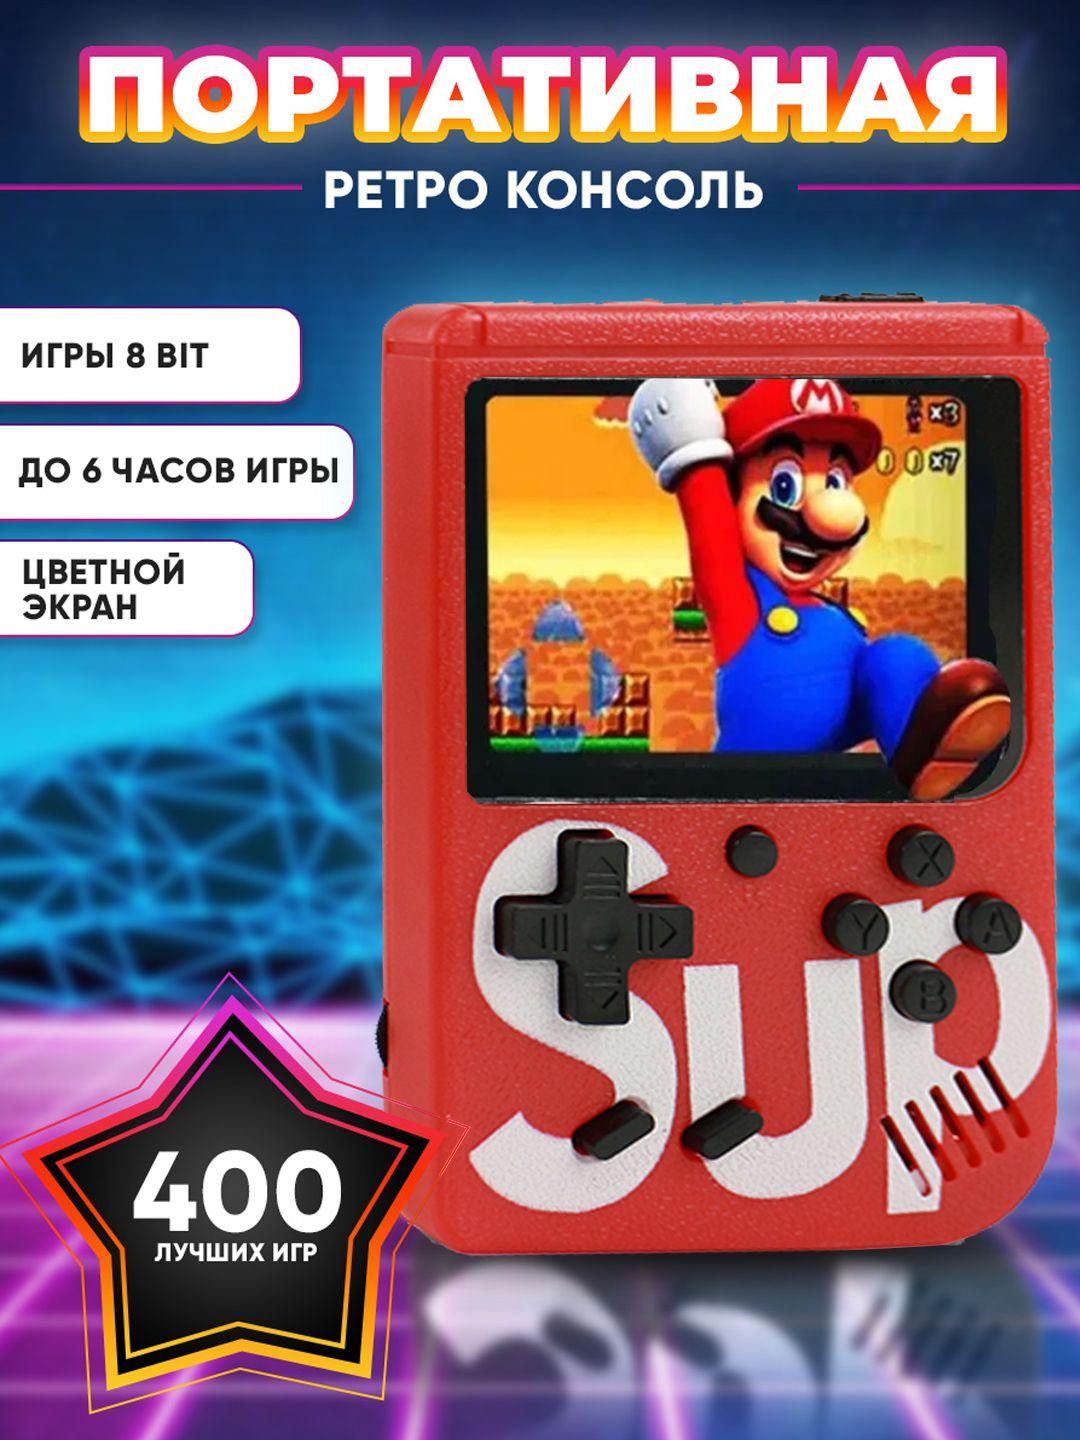 Портативная игровая приставка SUP Gamebox Plus 400 в 1, игровая консоль, приставка со встроенными играми (Красный)